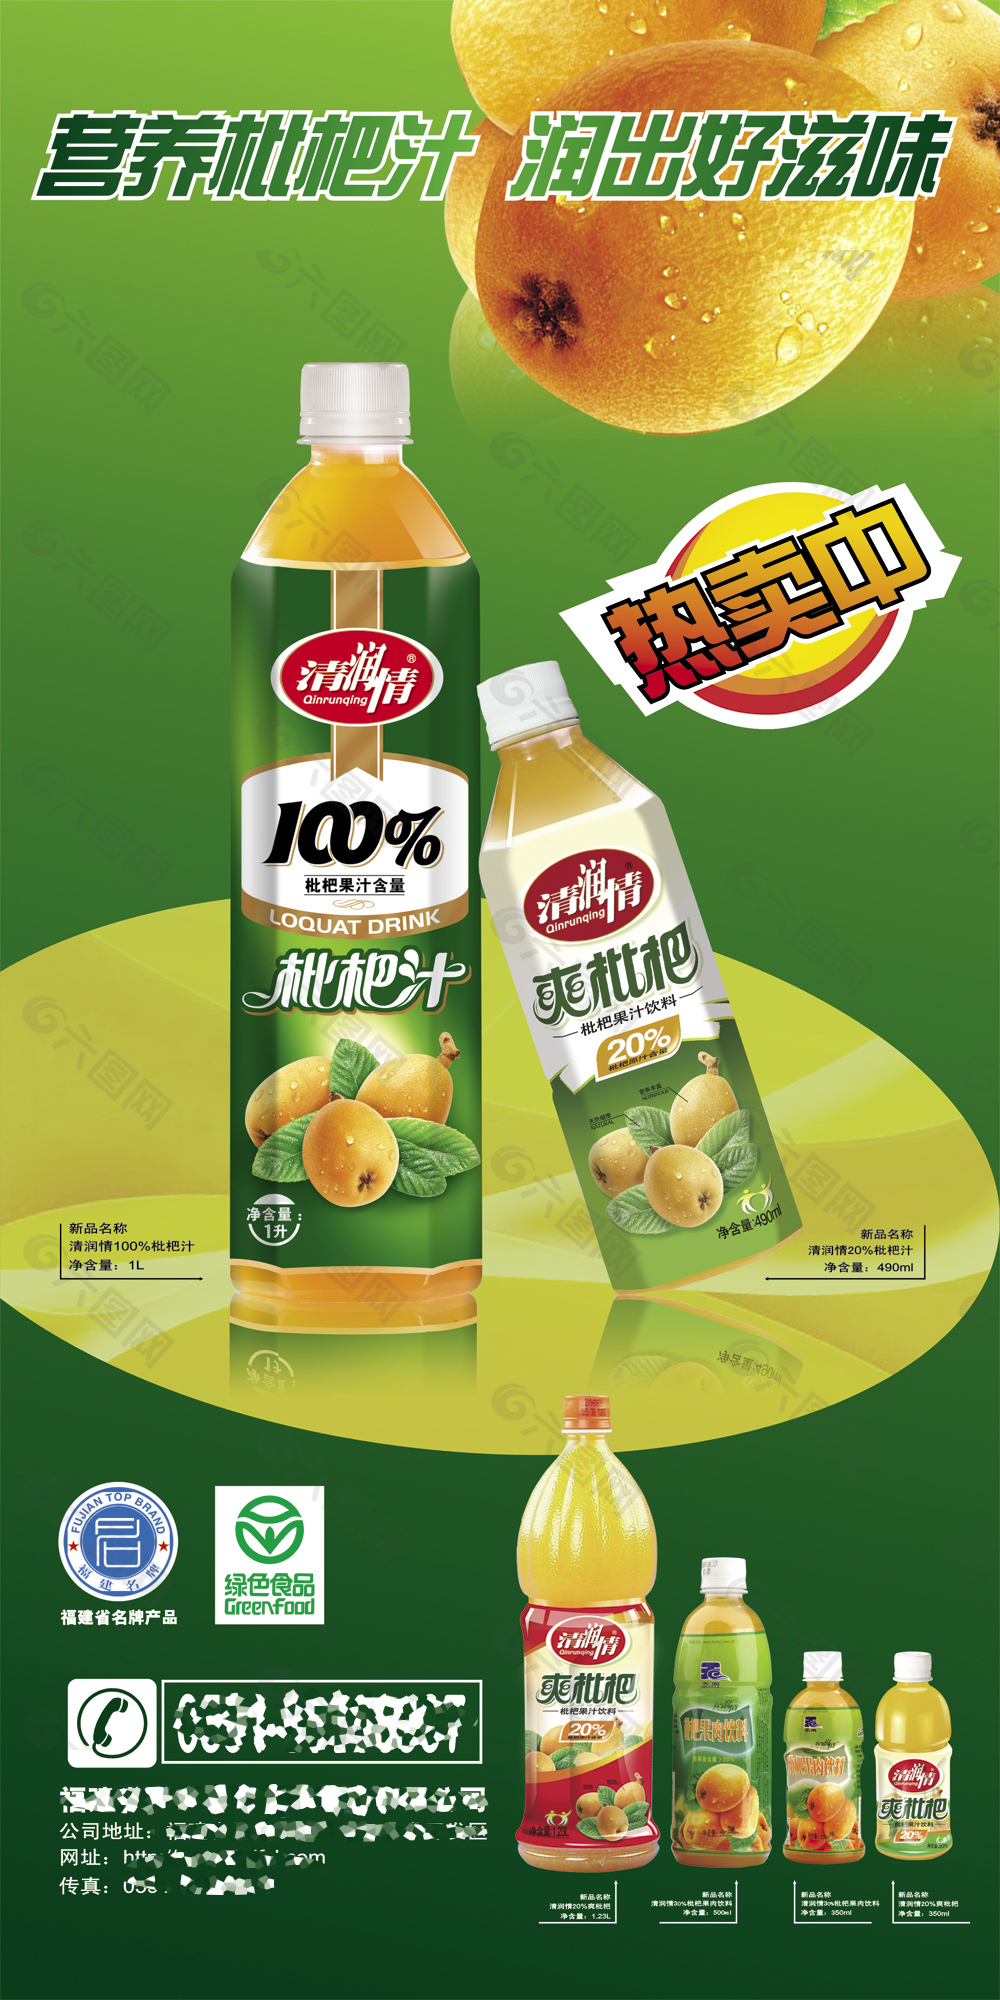 枇杷汁饮料促销广告